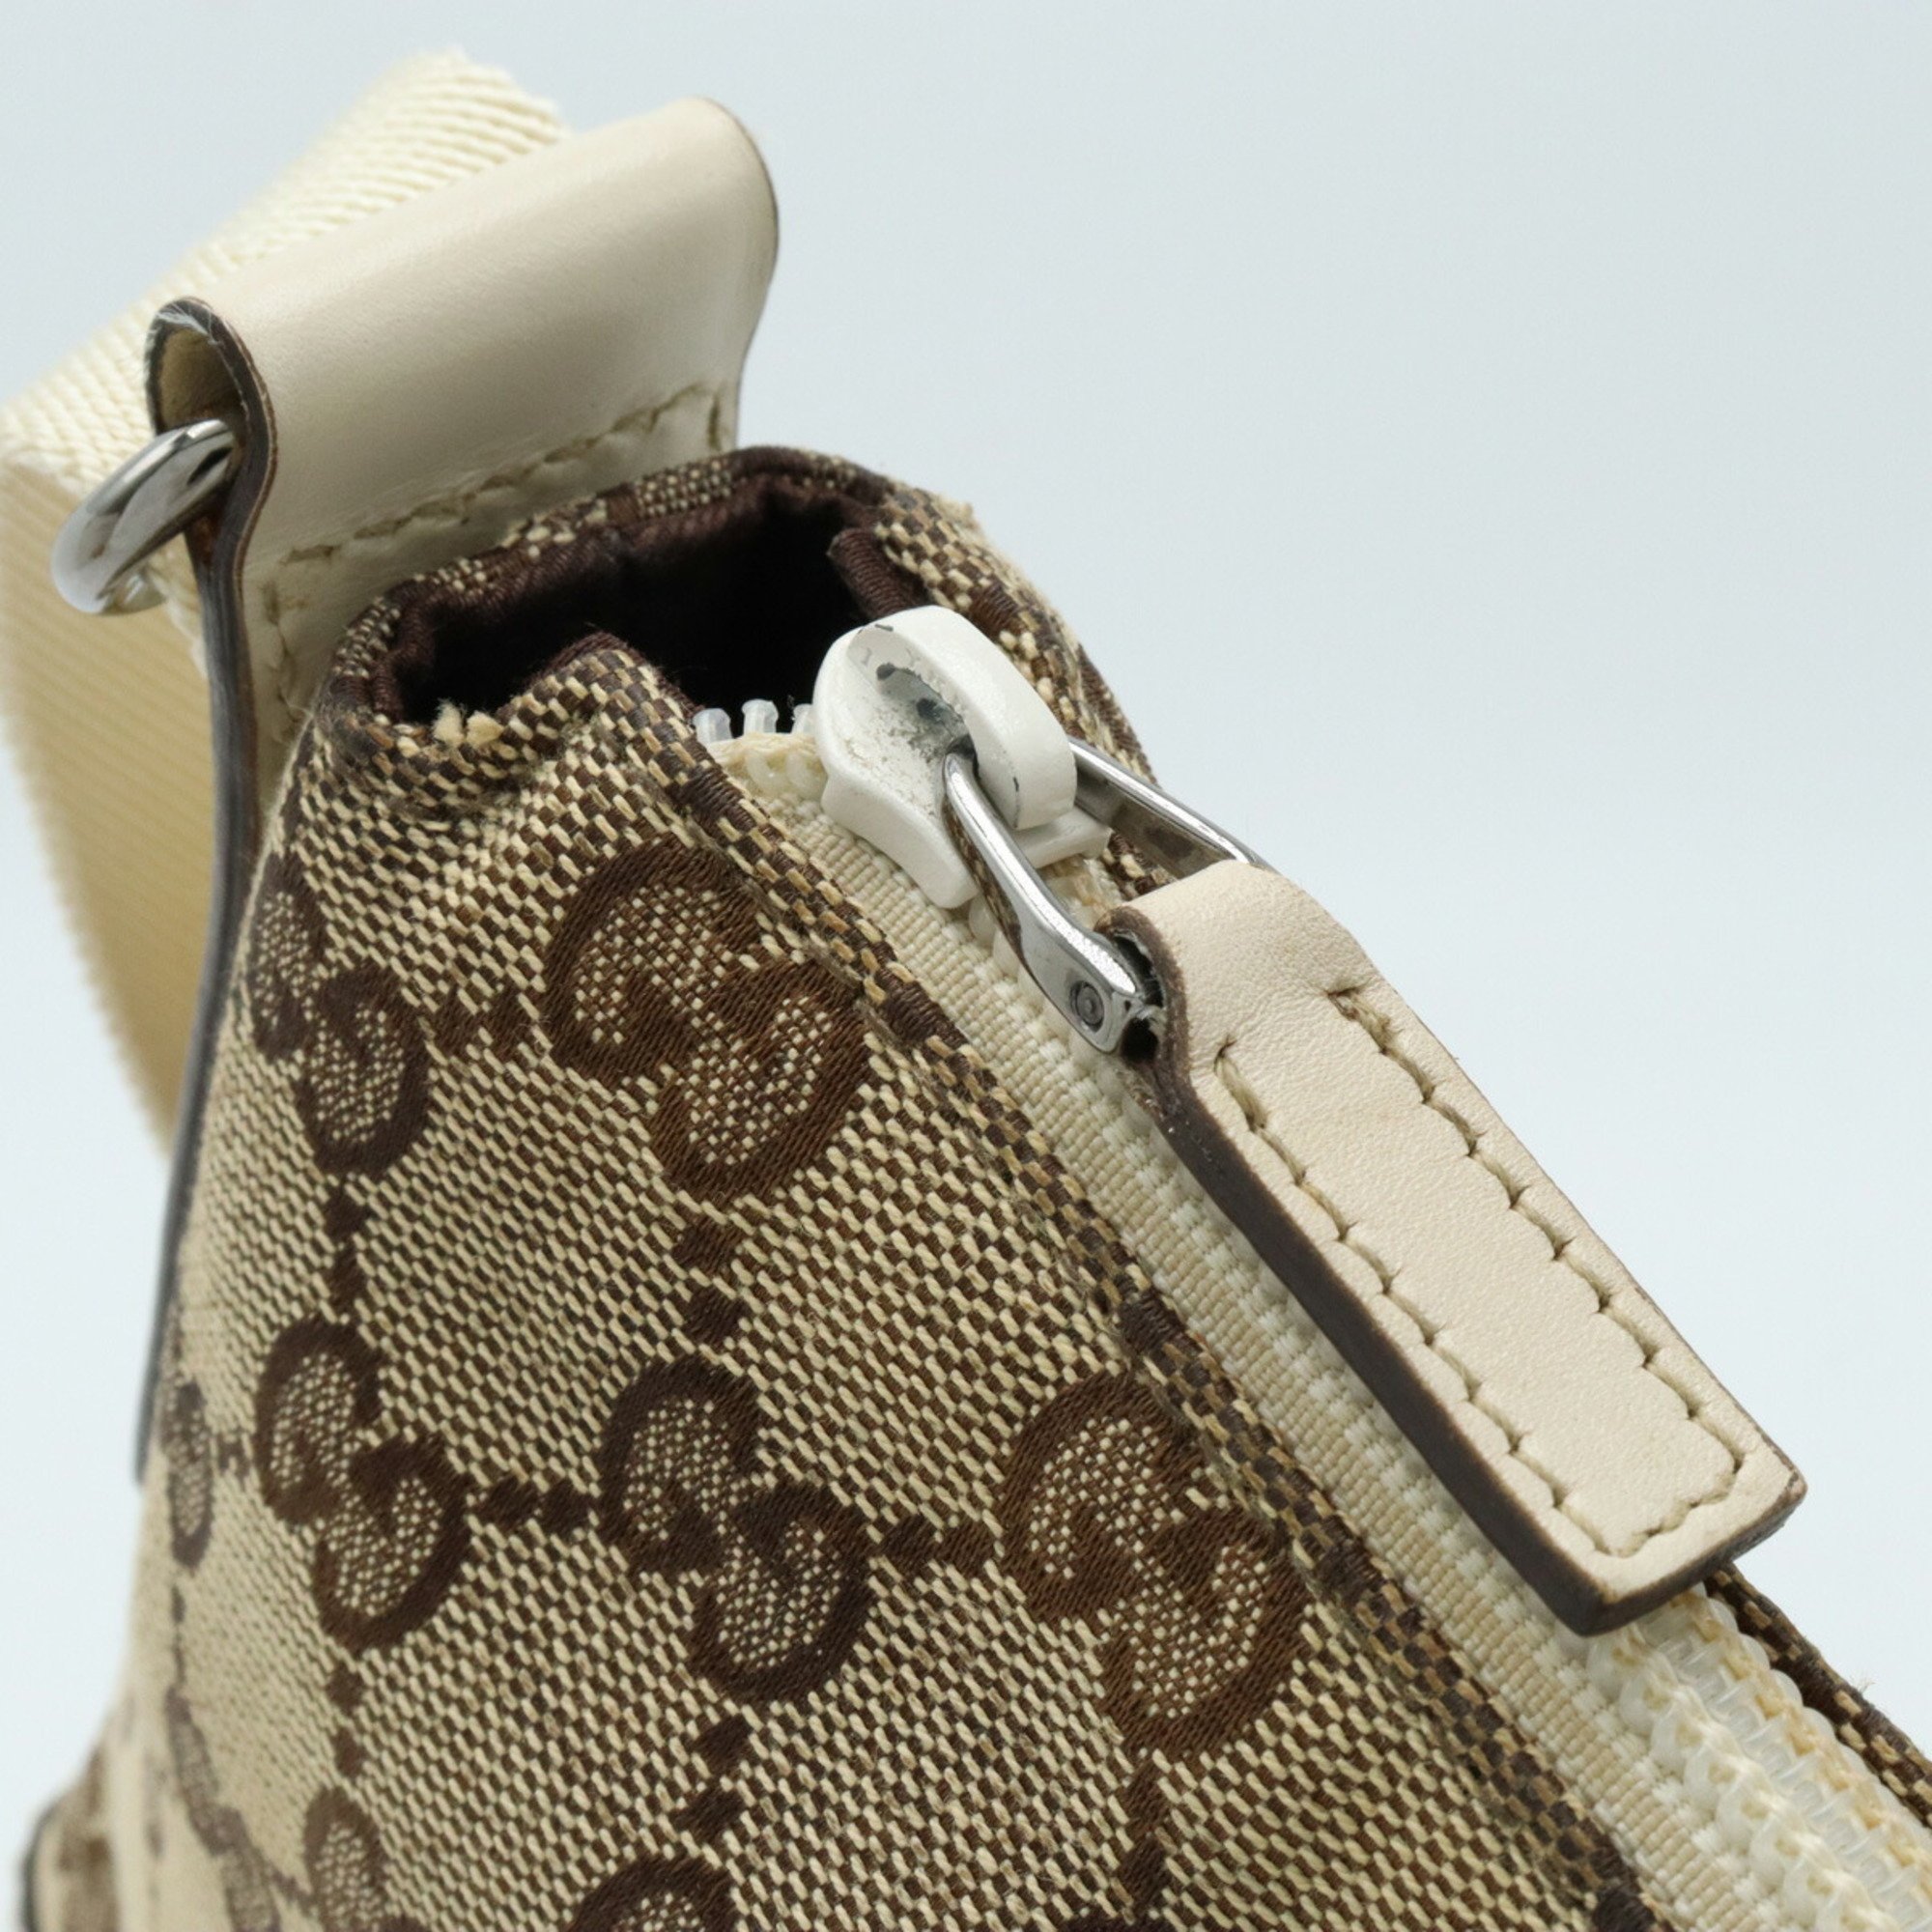 GUCCI GG canvas shoulder bag, pochette, leather, beige, ivory, 147671